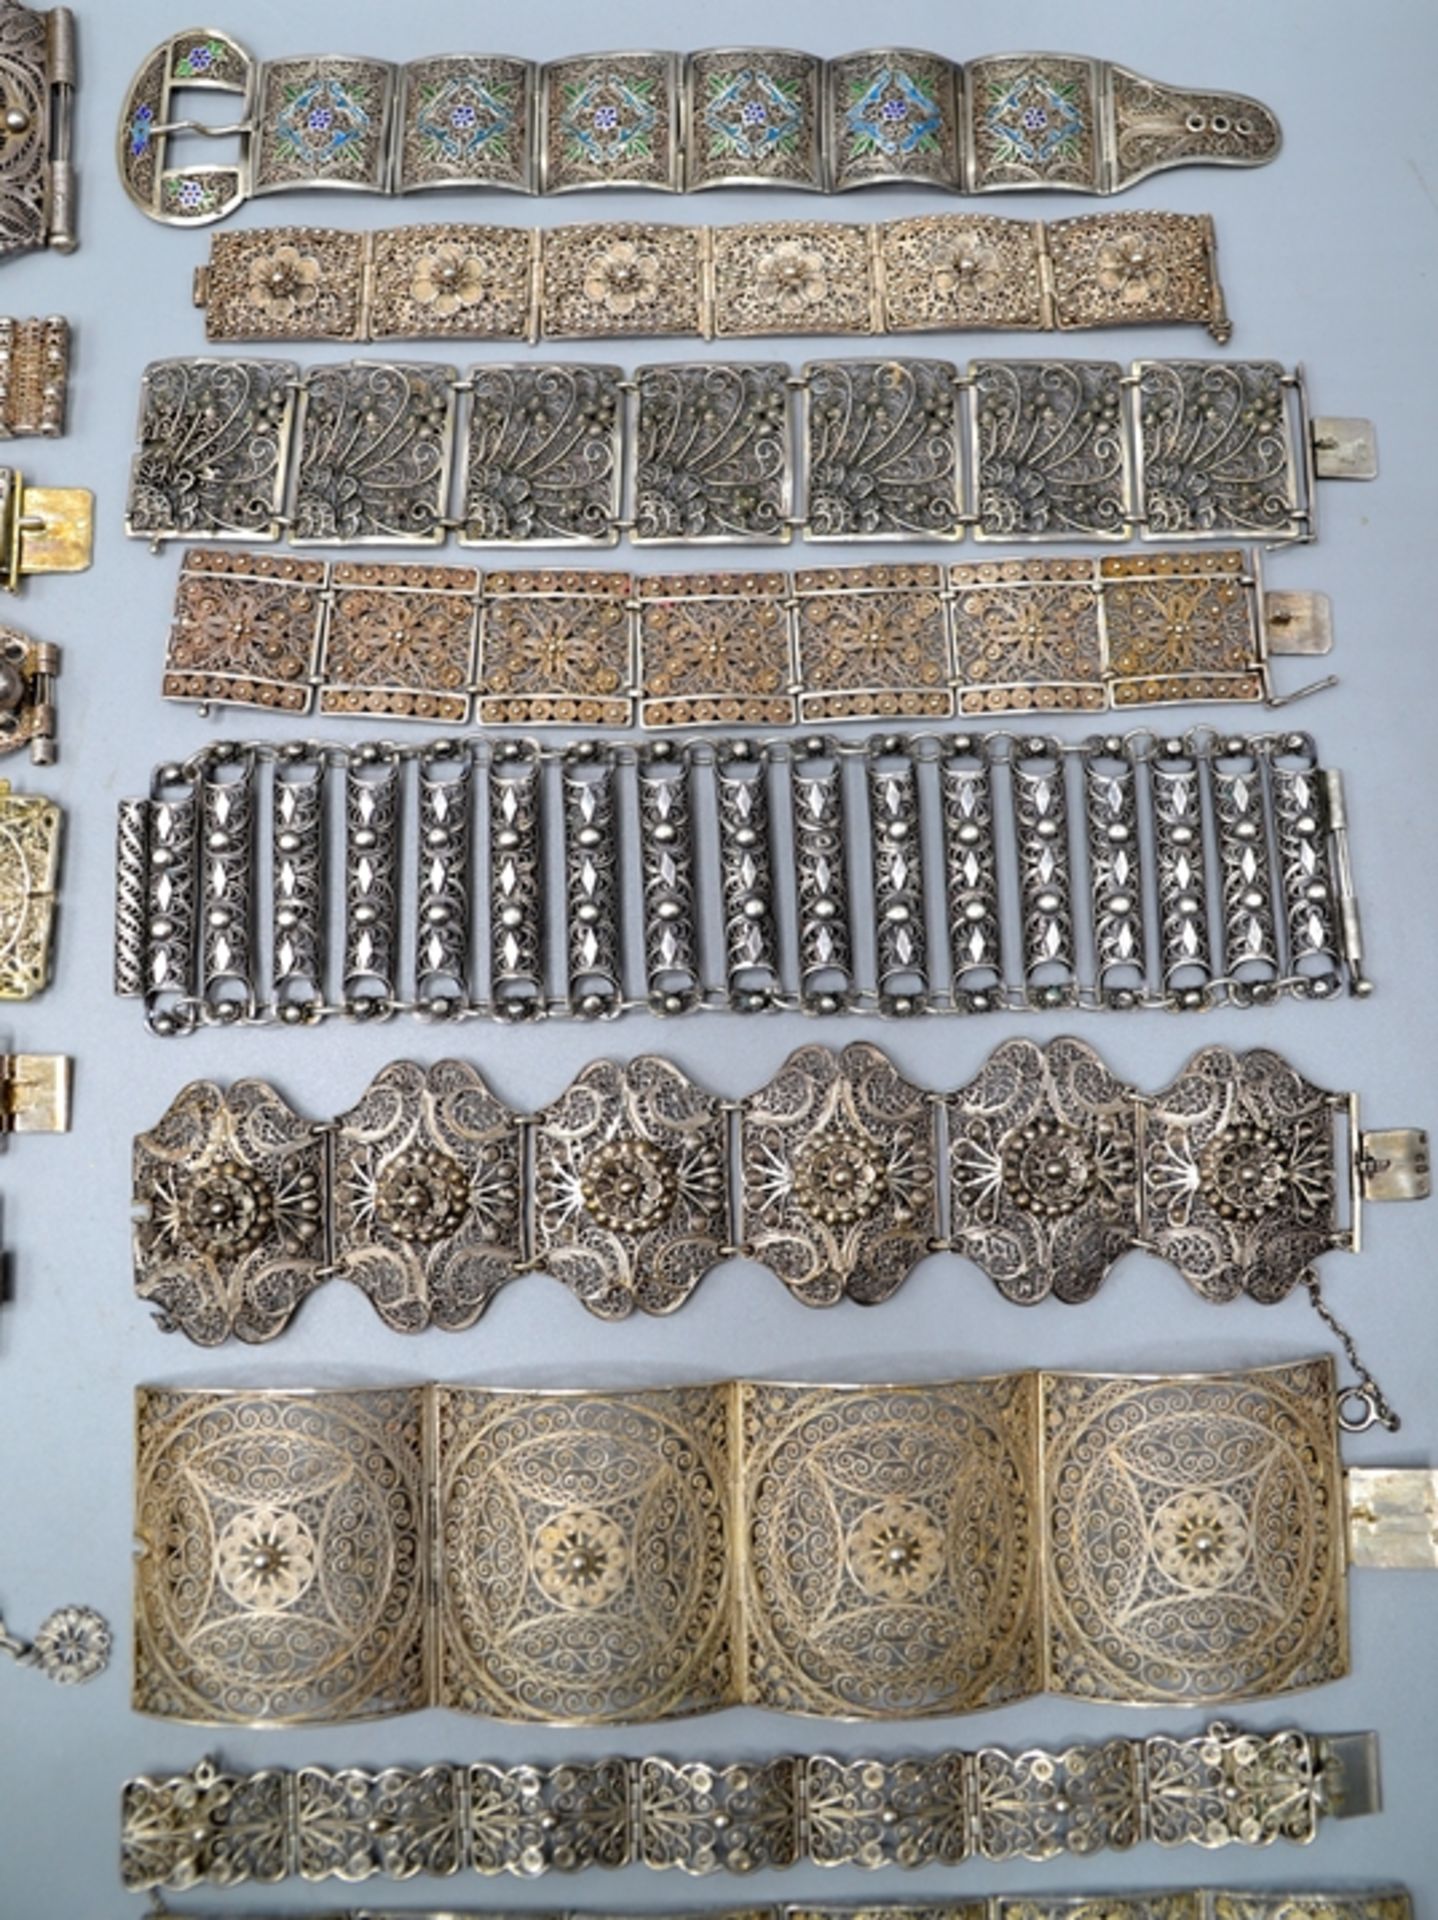 Armbänder filigran Silberdraht Silberschmuck Trachtenschmuck überw. Silber ca. 29 St., der große Te - Bild 5 aus 5